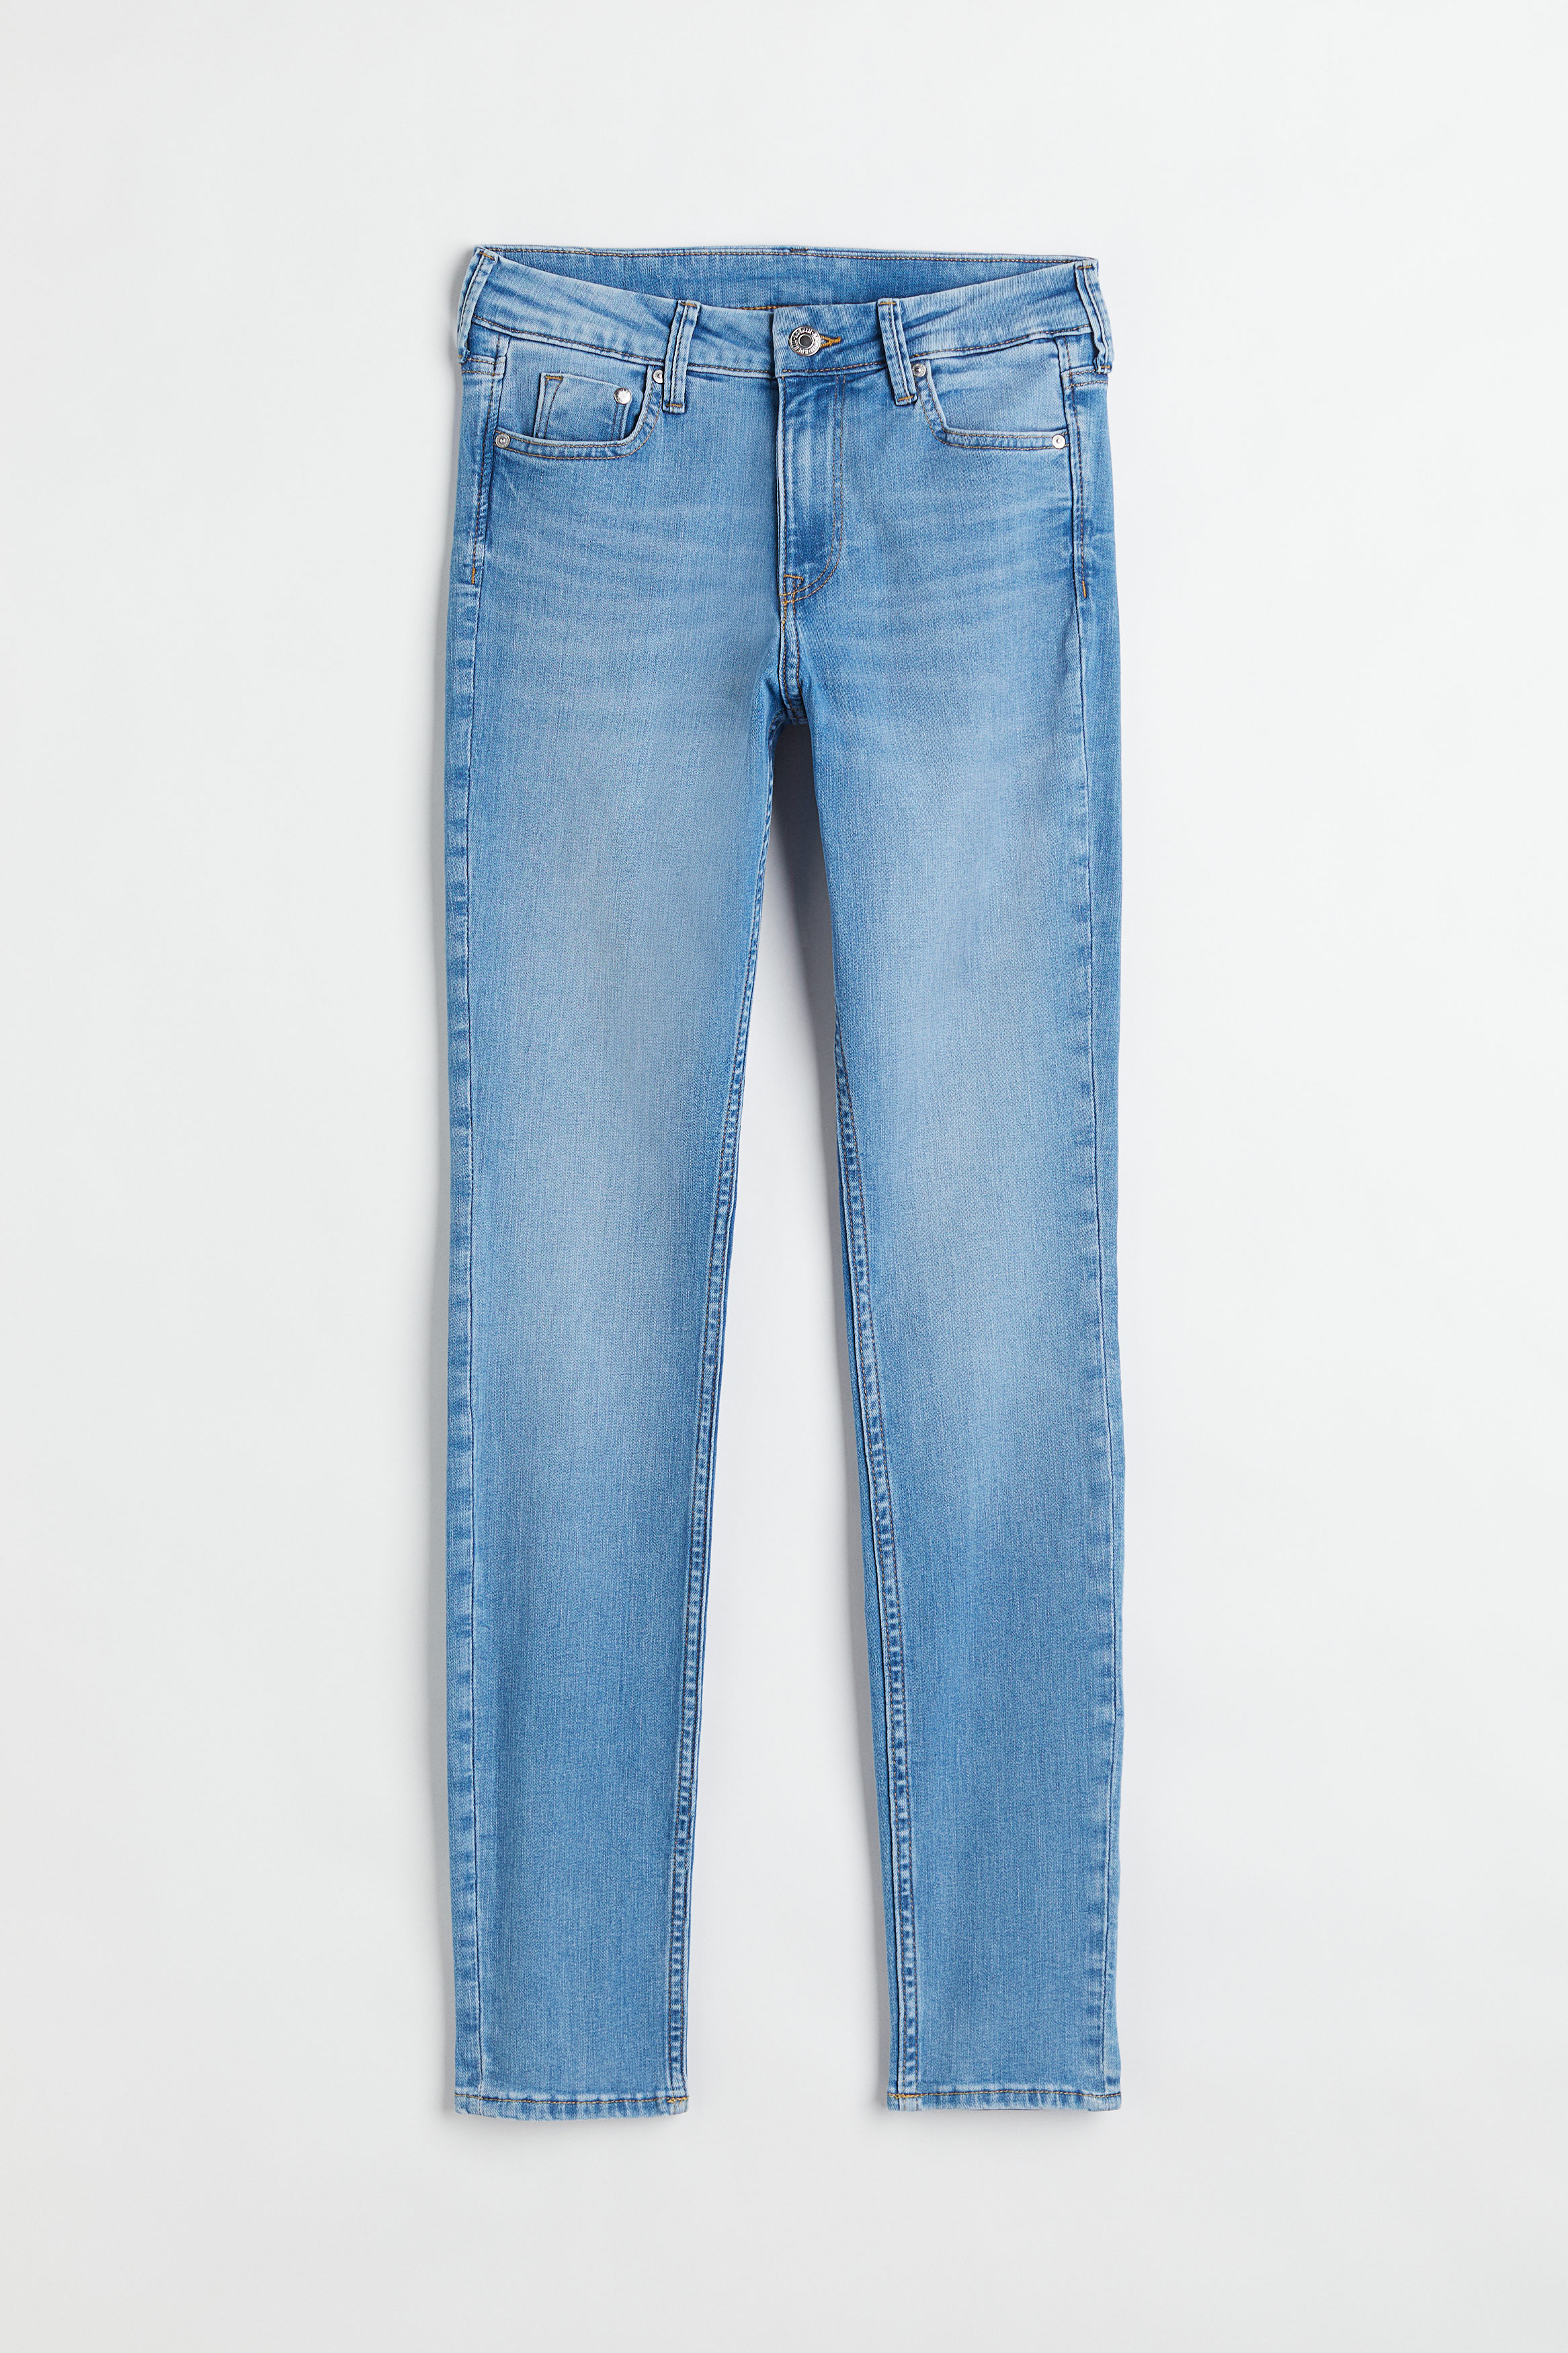 Billede af H&M Skinny Regular Jeans Denimblå, jeans. Farve: Denim blue 014 I størrelse 32